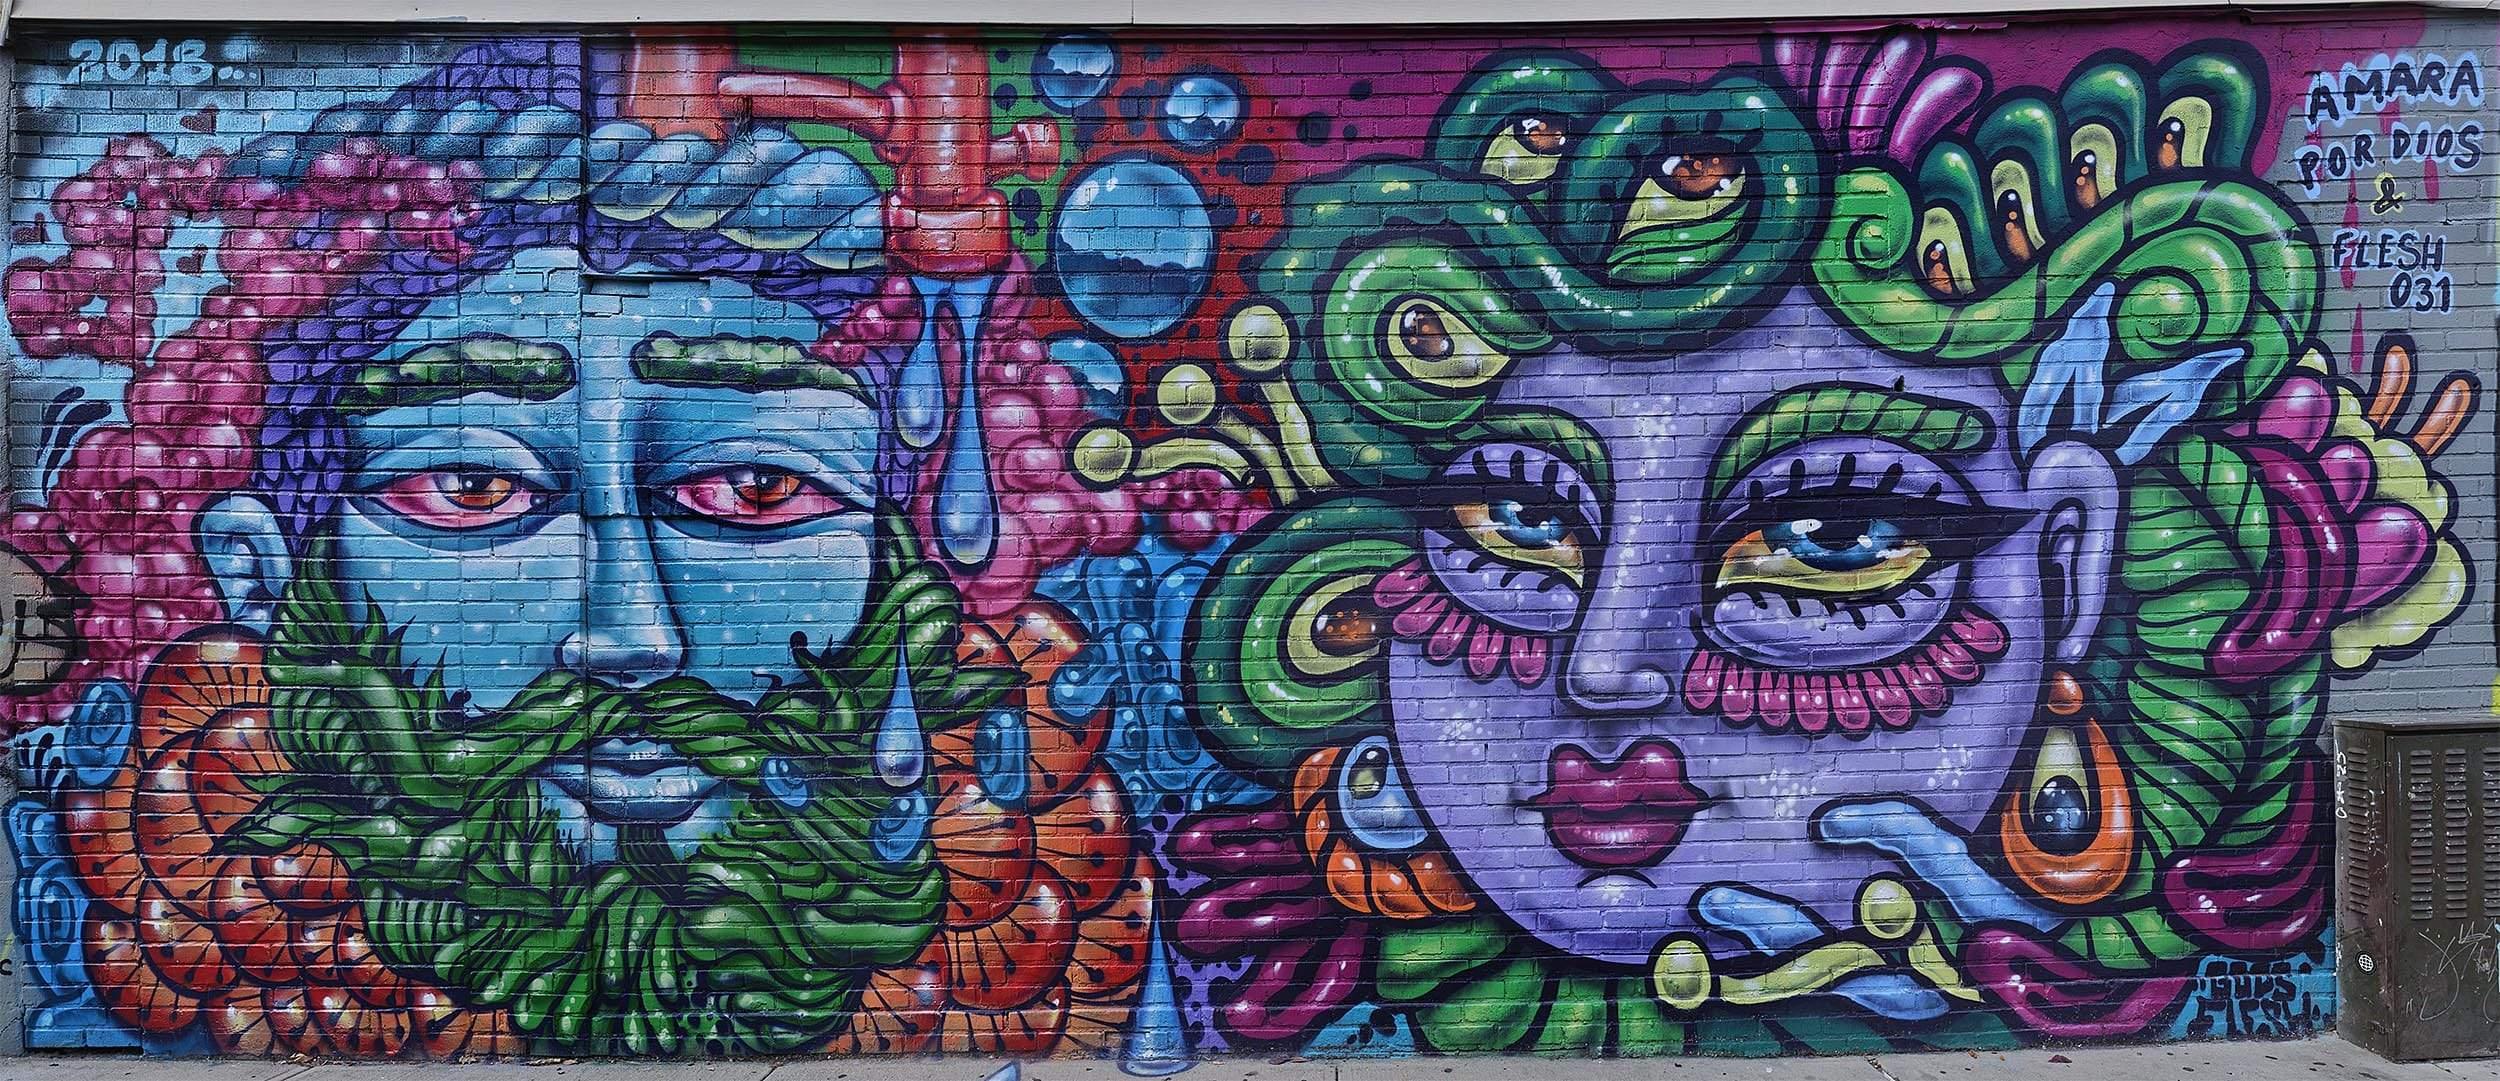 Graffiti Wall NYC Bushwick